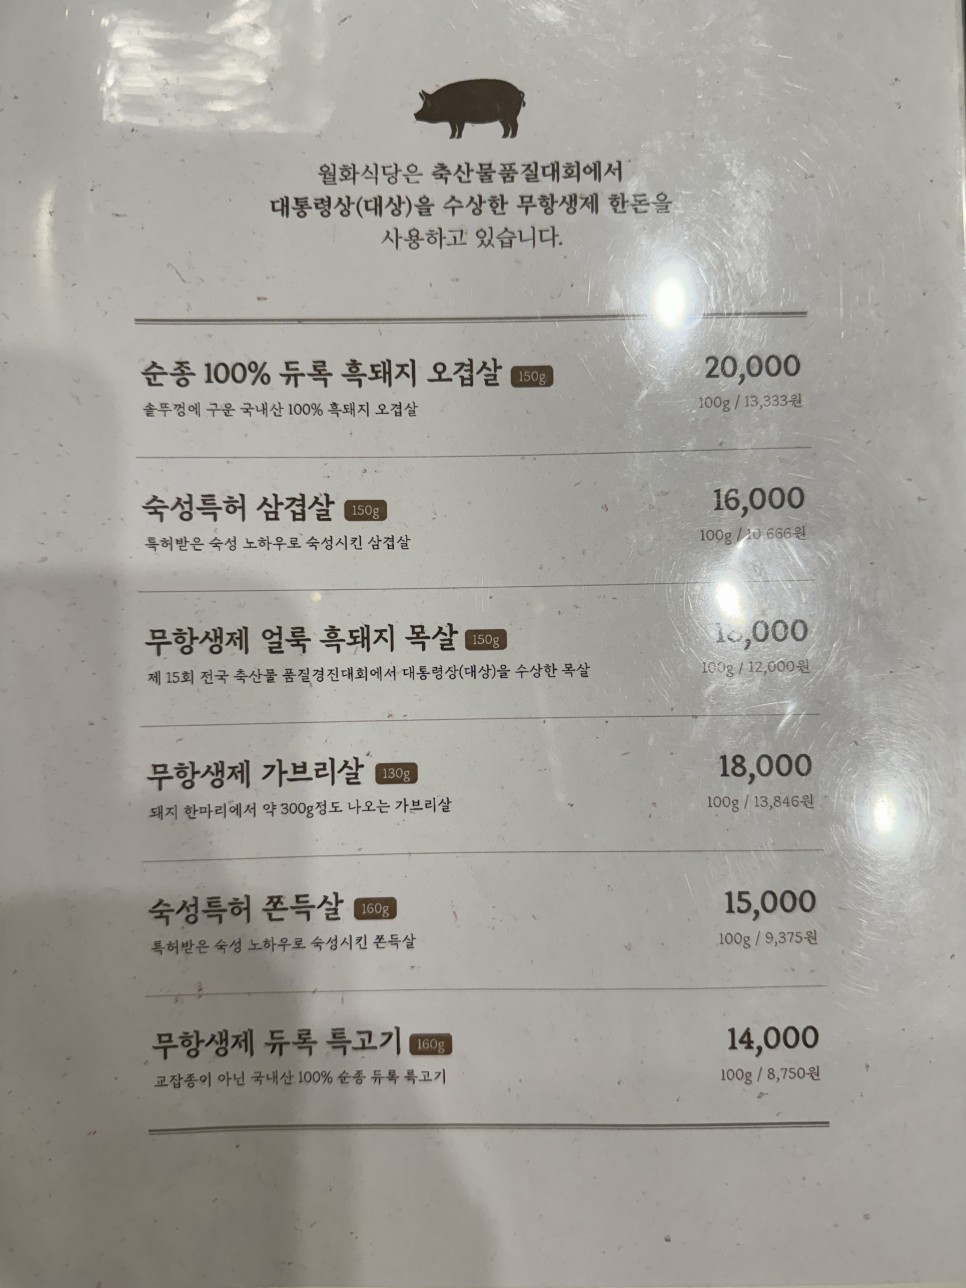 [구디 맛집] 구로디지털단지 '월화식당' 오겹살 인생 고기집으로 추천